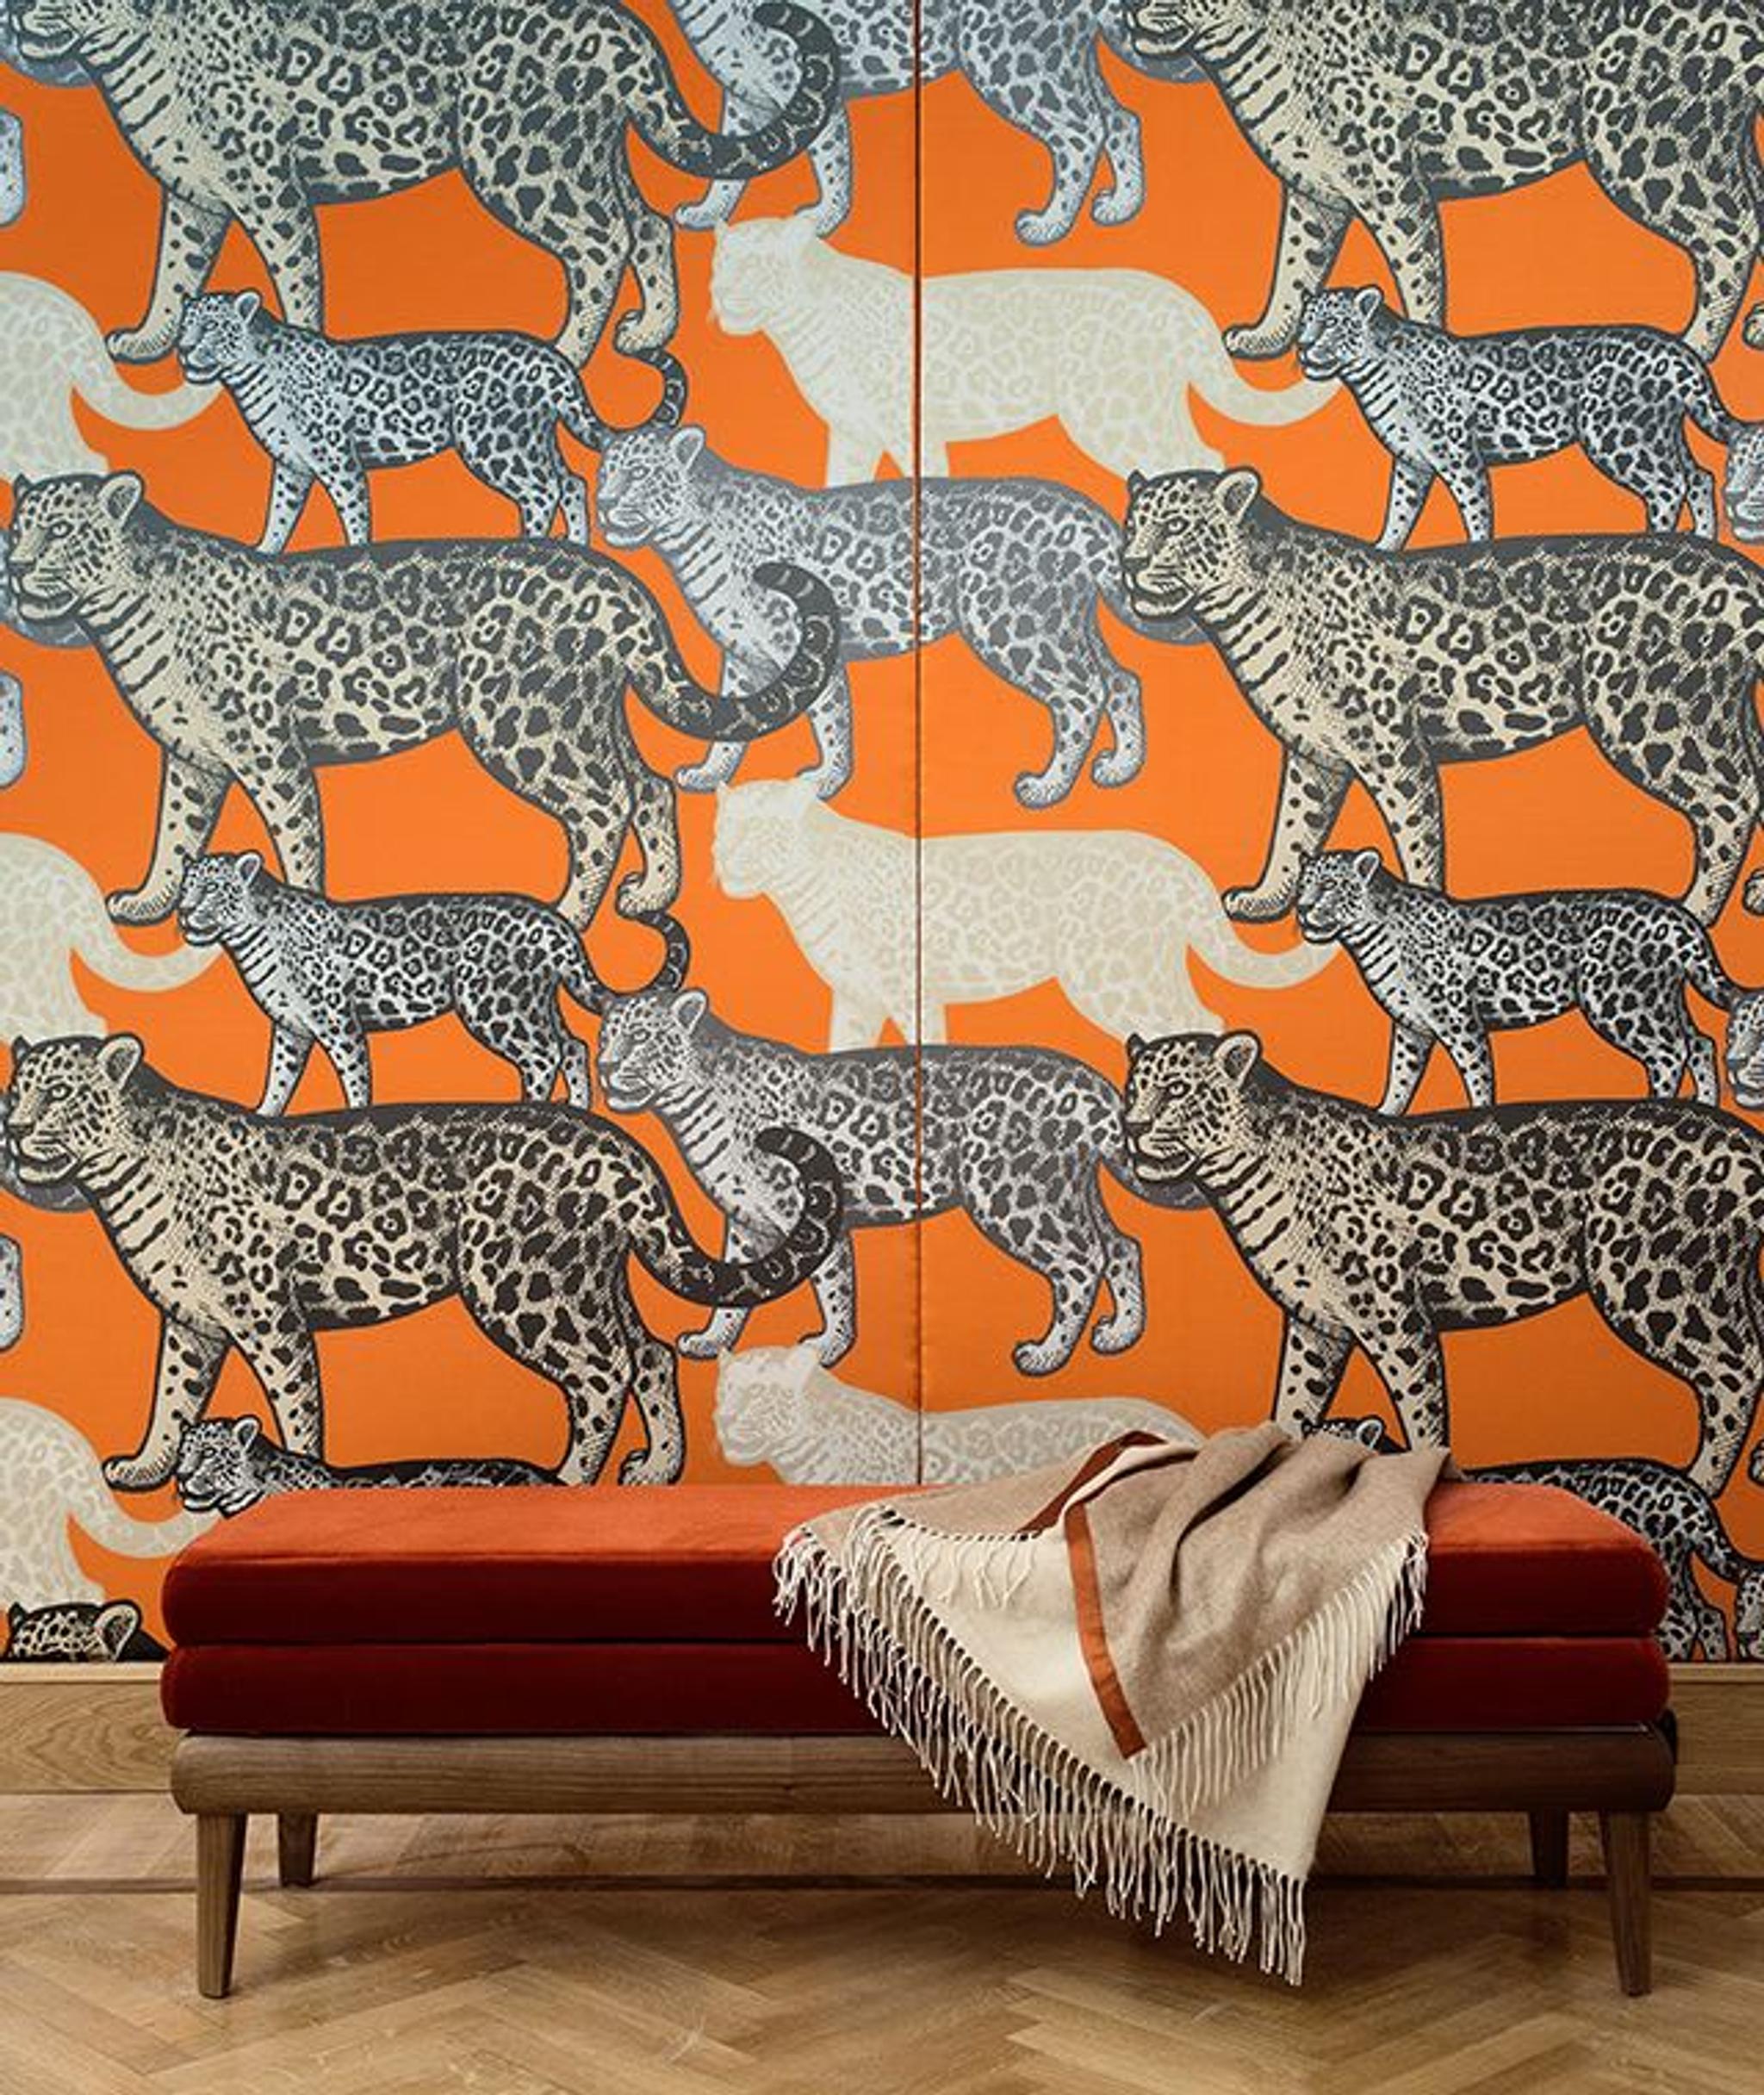 Orangefarbenes Paneel für gehende Leoparden von Midsummer Milano